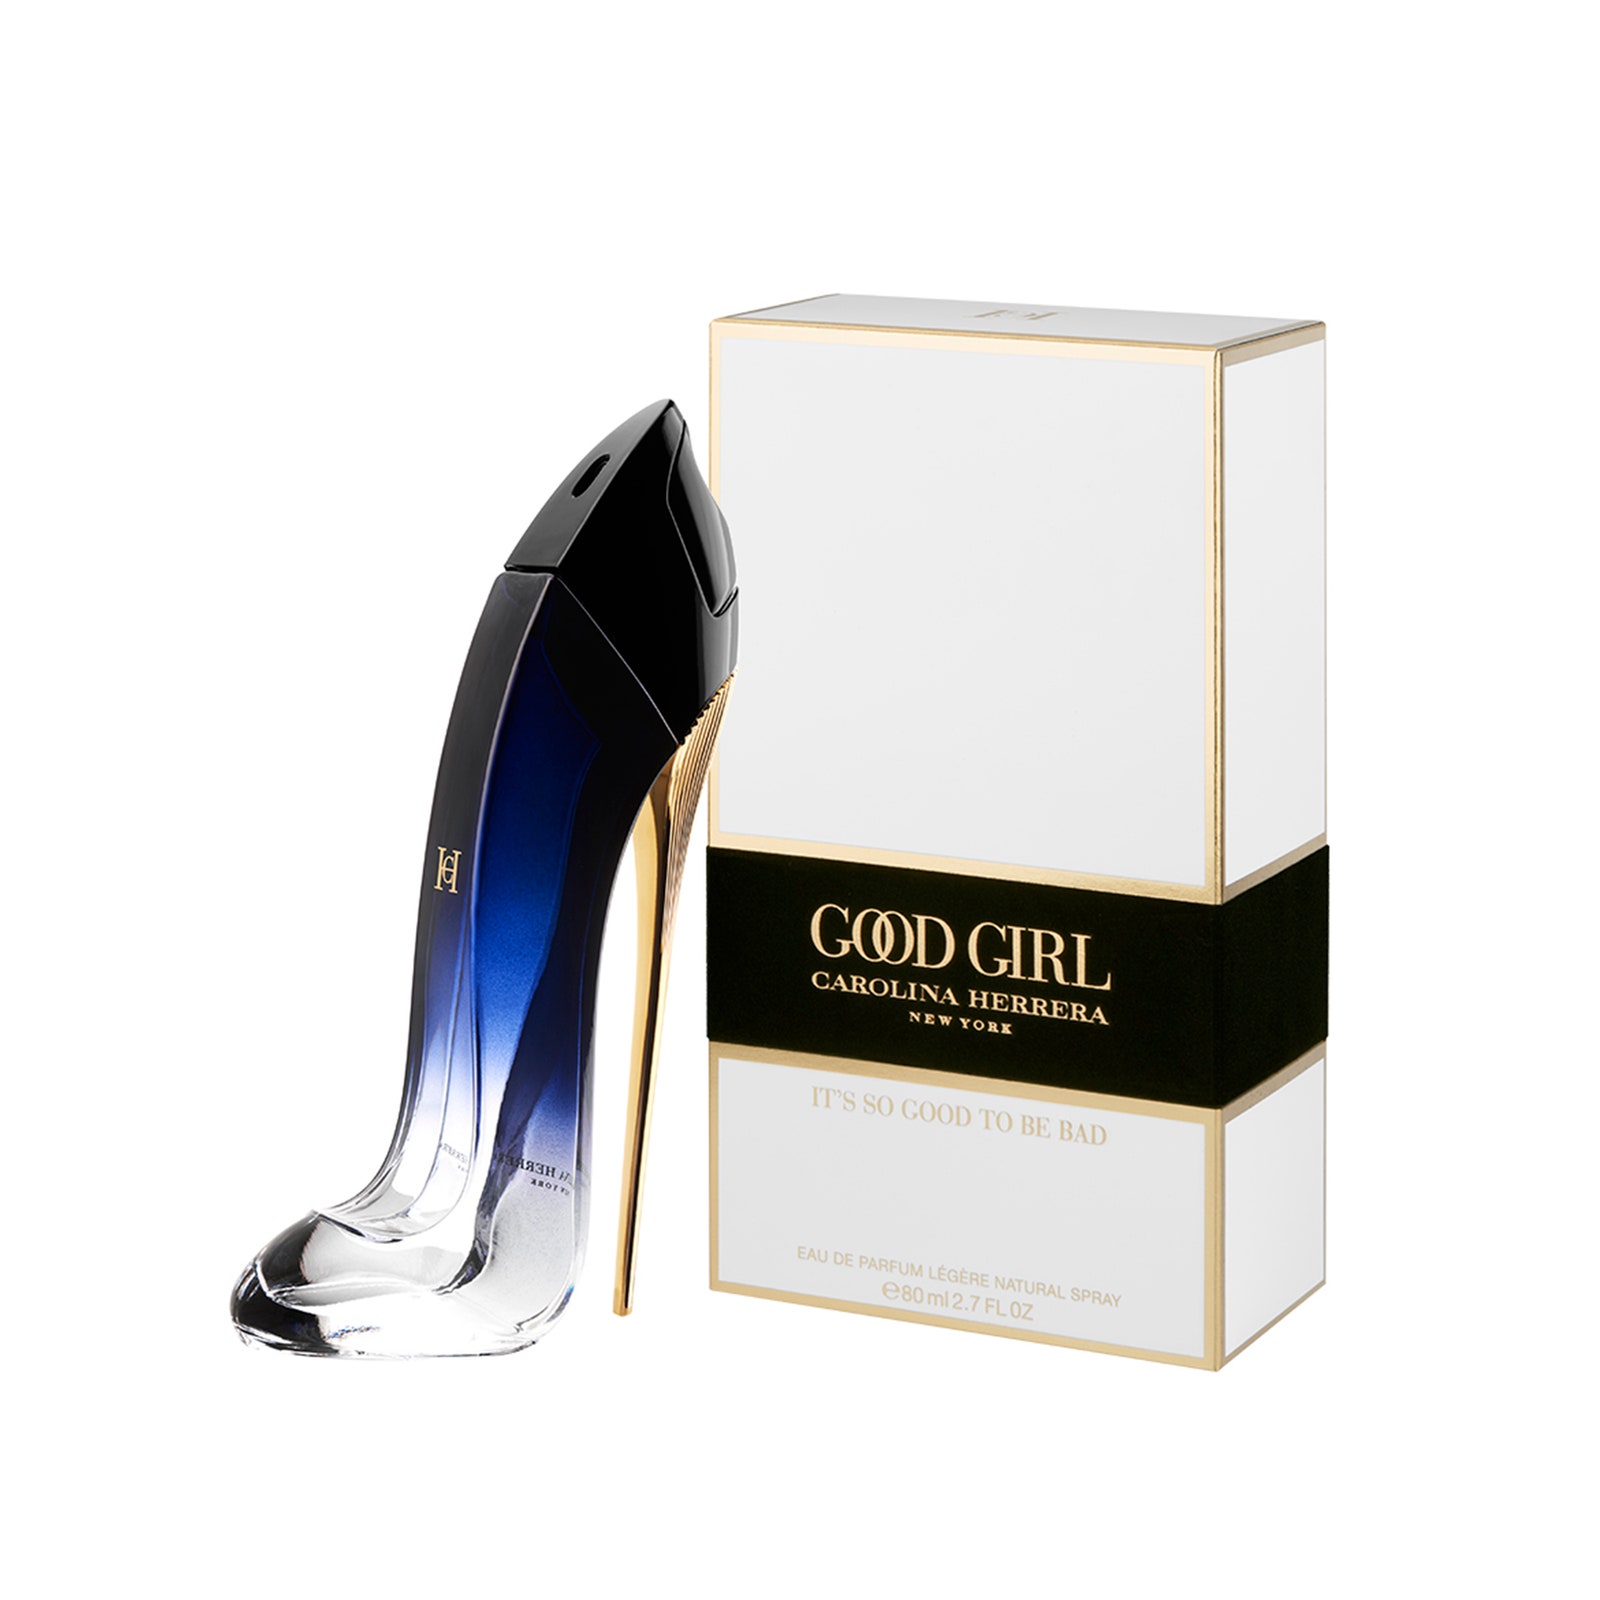 Carolina Herrera представляет обновленную версию аромата Good Girl Eau de Parfum Lgère